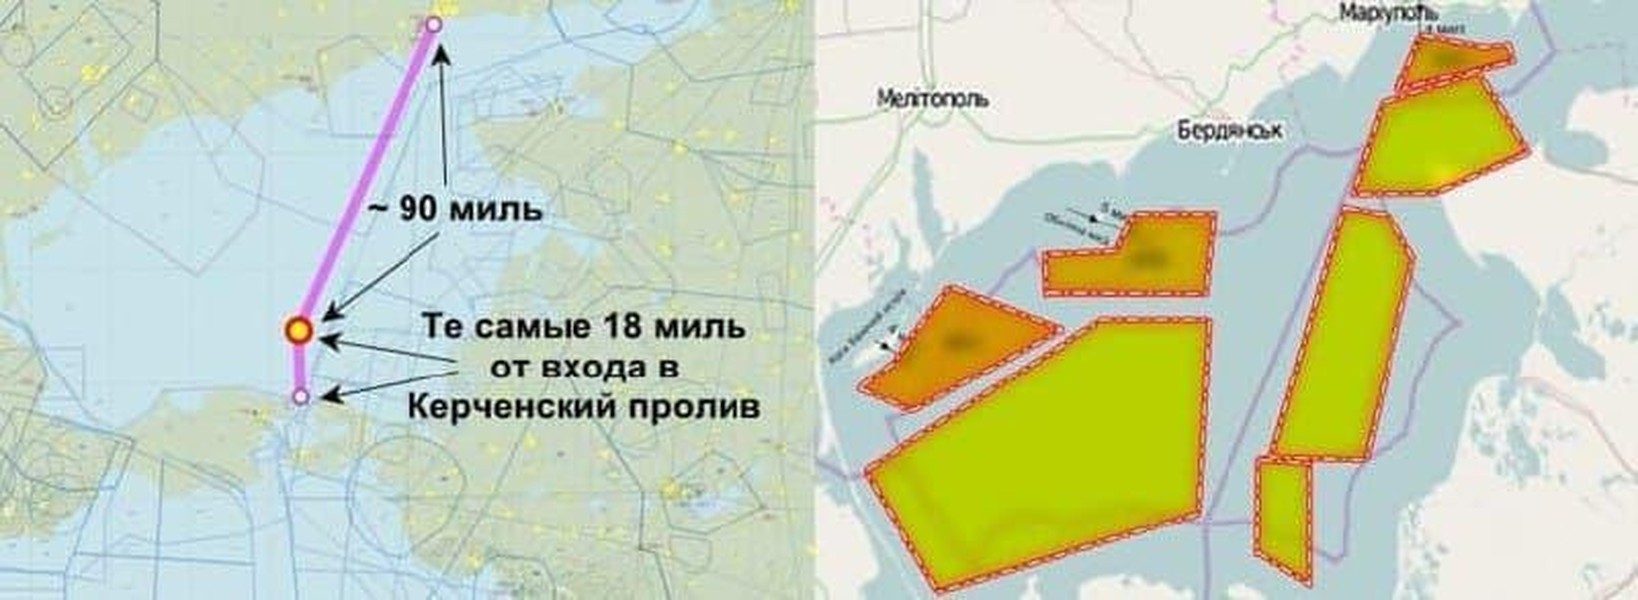 UAV Bayraktar TB2 Ukraine tấn công dữ dội Donbass từ 3 hướng